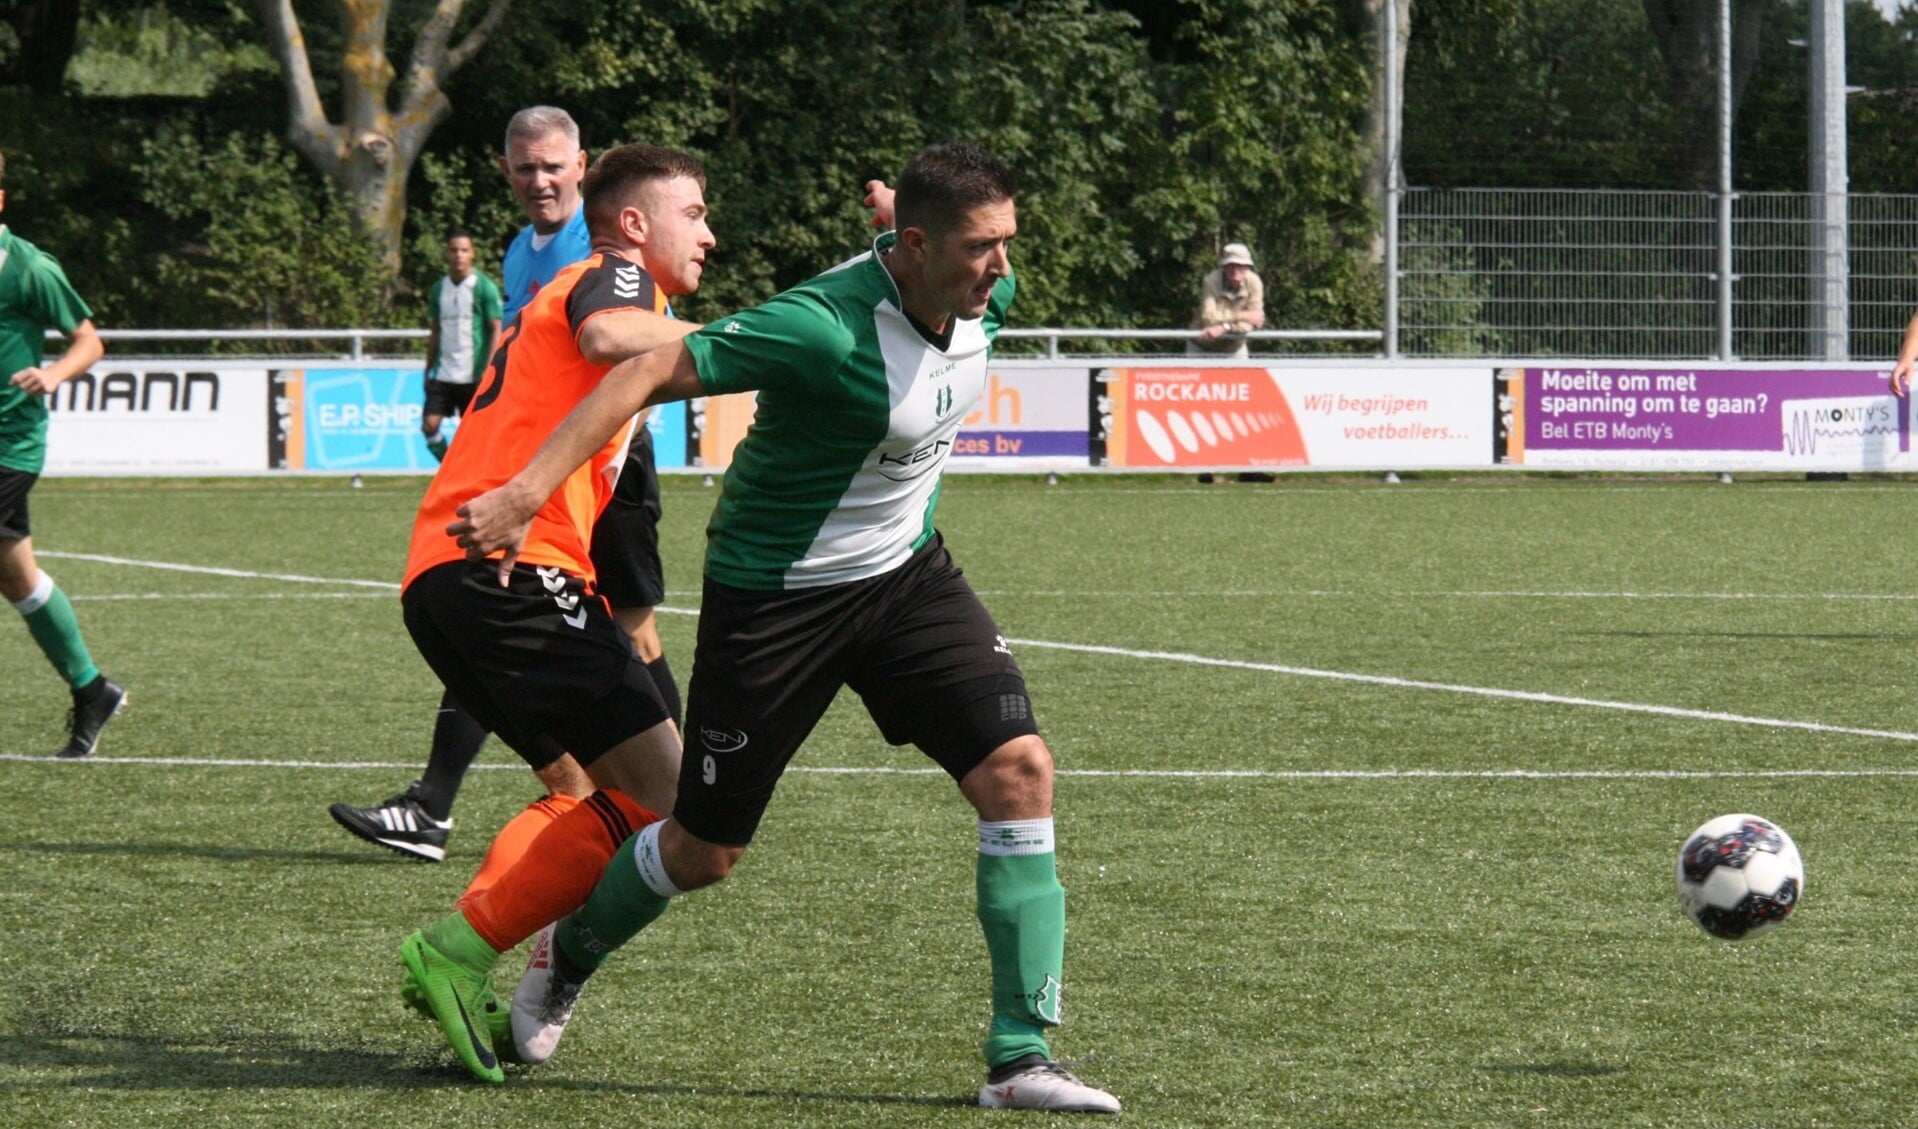 Aanwinst Wouter Besters scoorde twee keer voor OVV In het bekerduel bij Rockanje. * Foto: Wil van Balen.